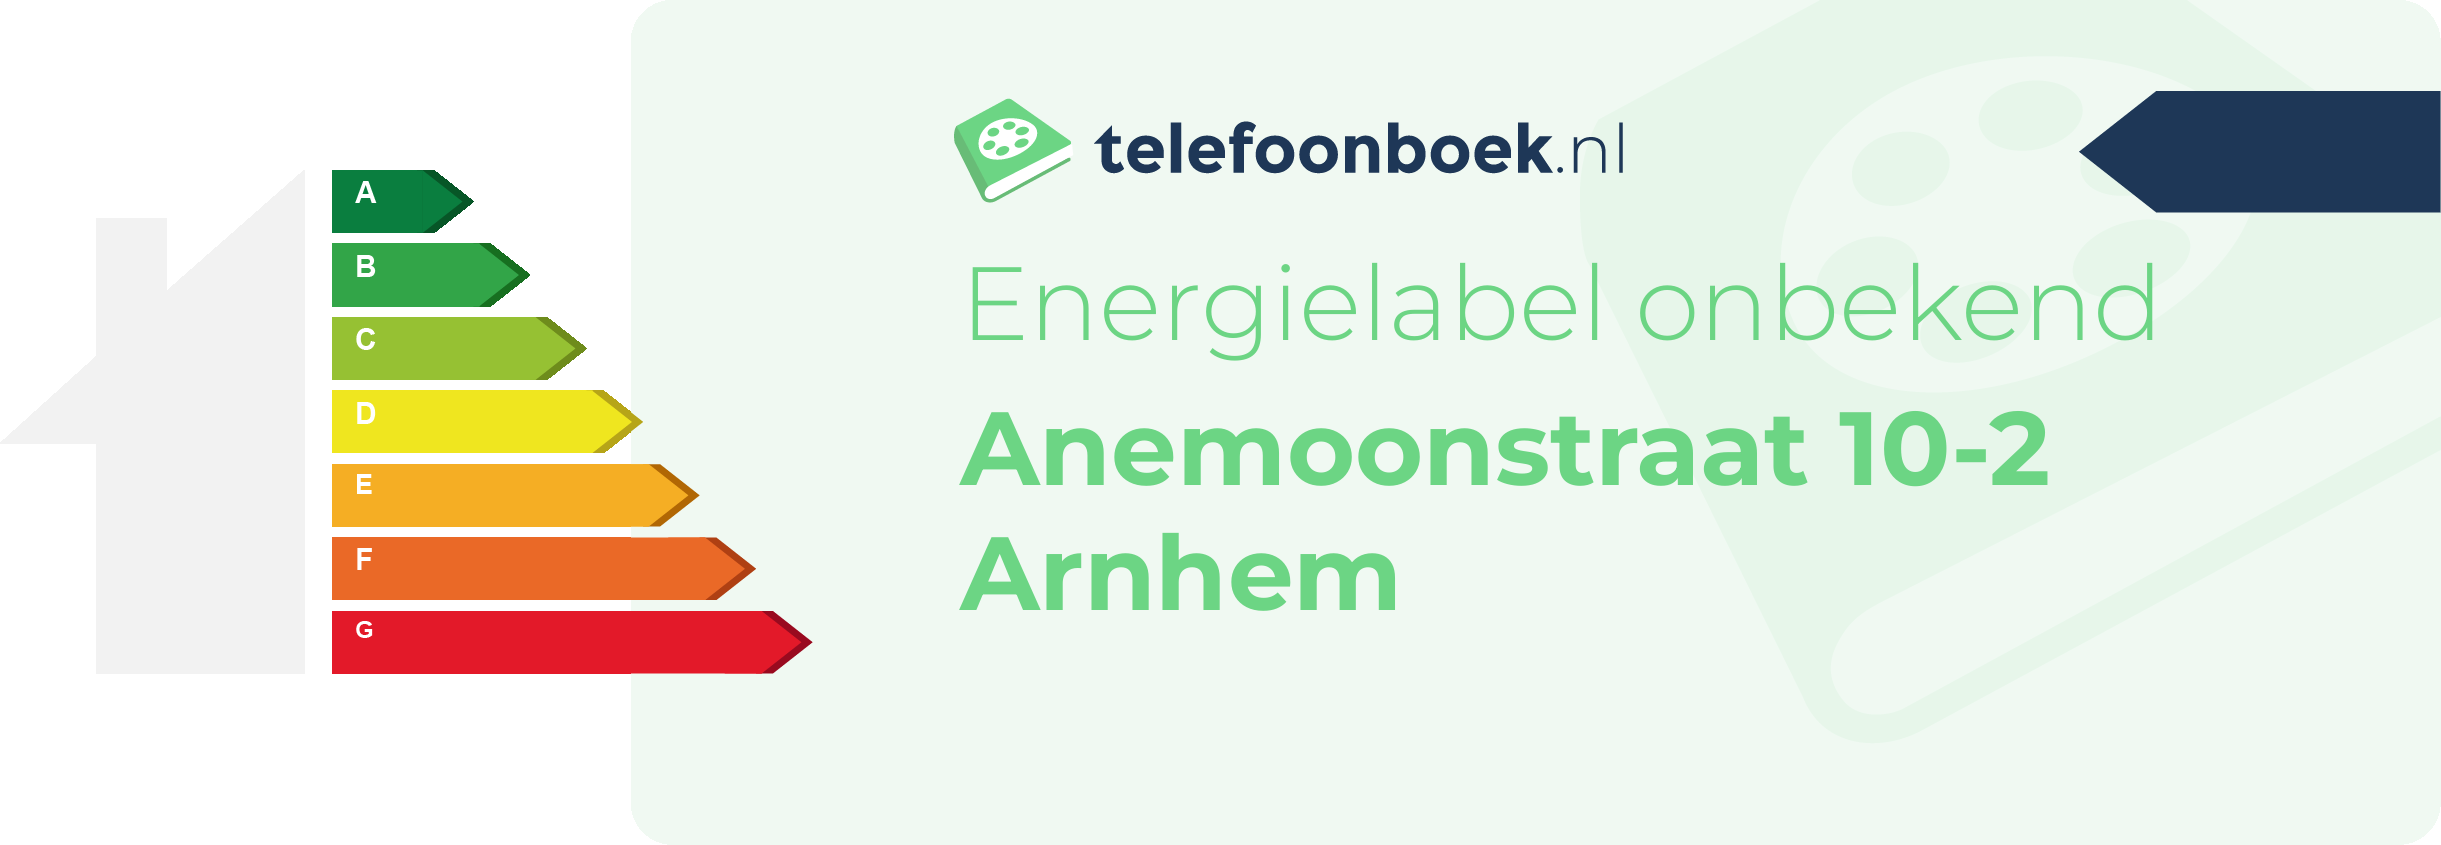 Energielabel Anemoonstraat 10-2 Arnhem